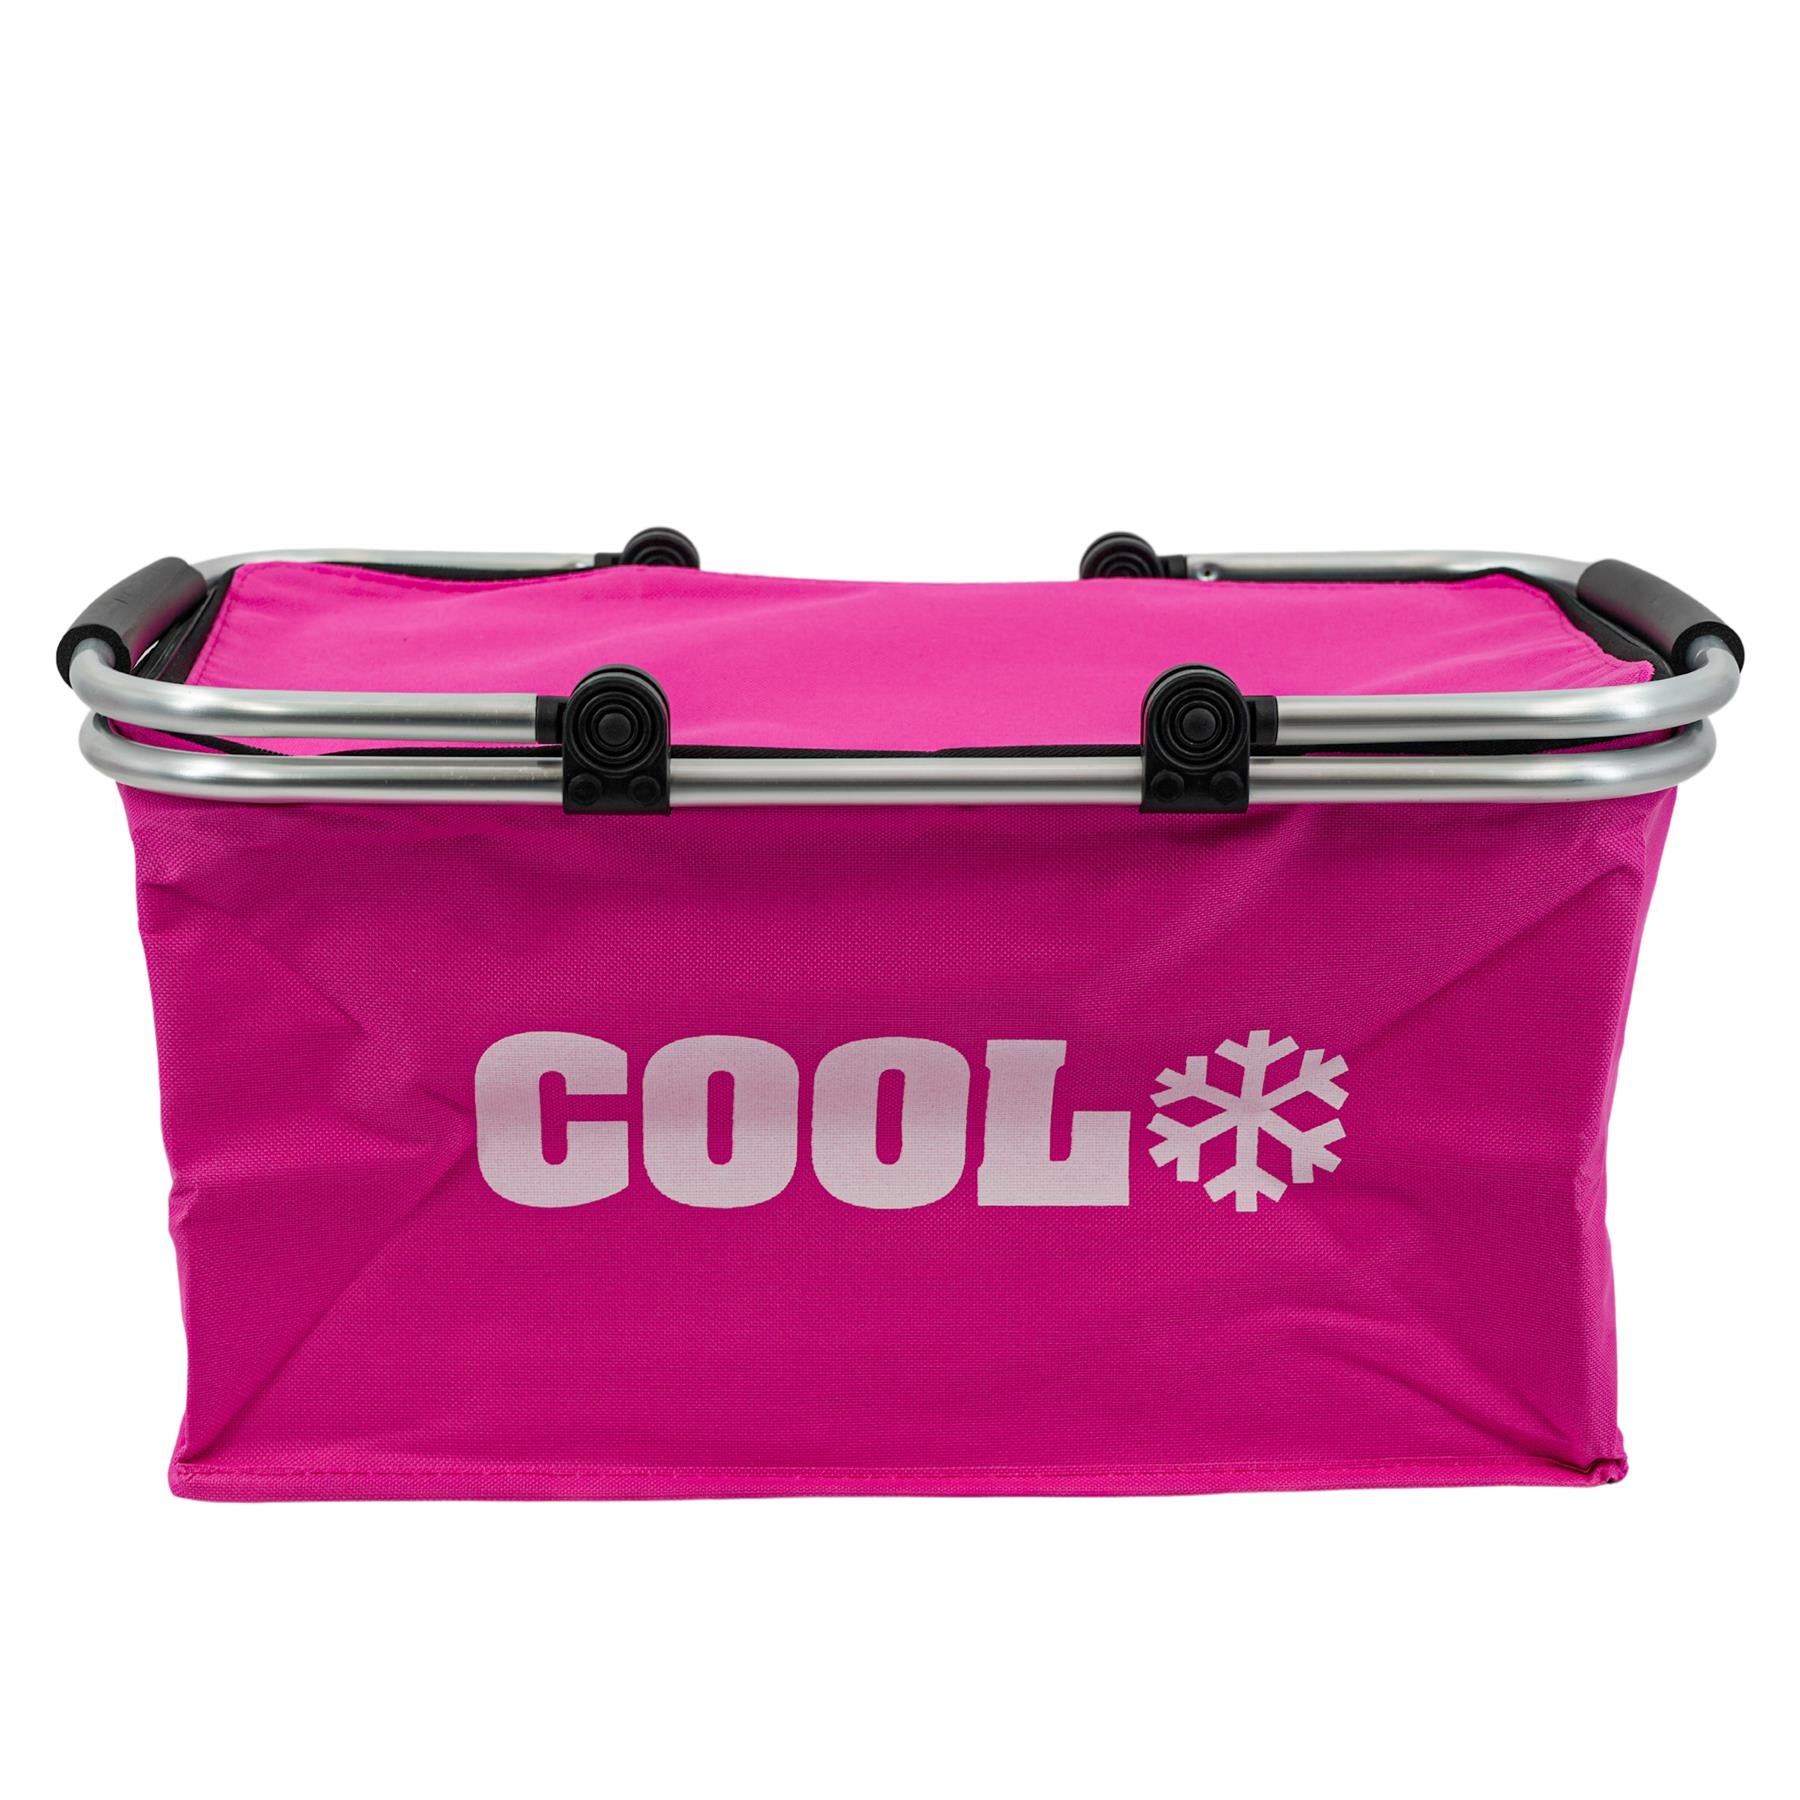 The Magic Toy Shop mealholder Pink Cooler Basket Bag